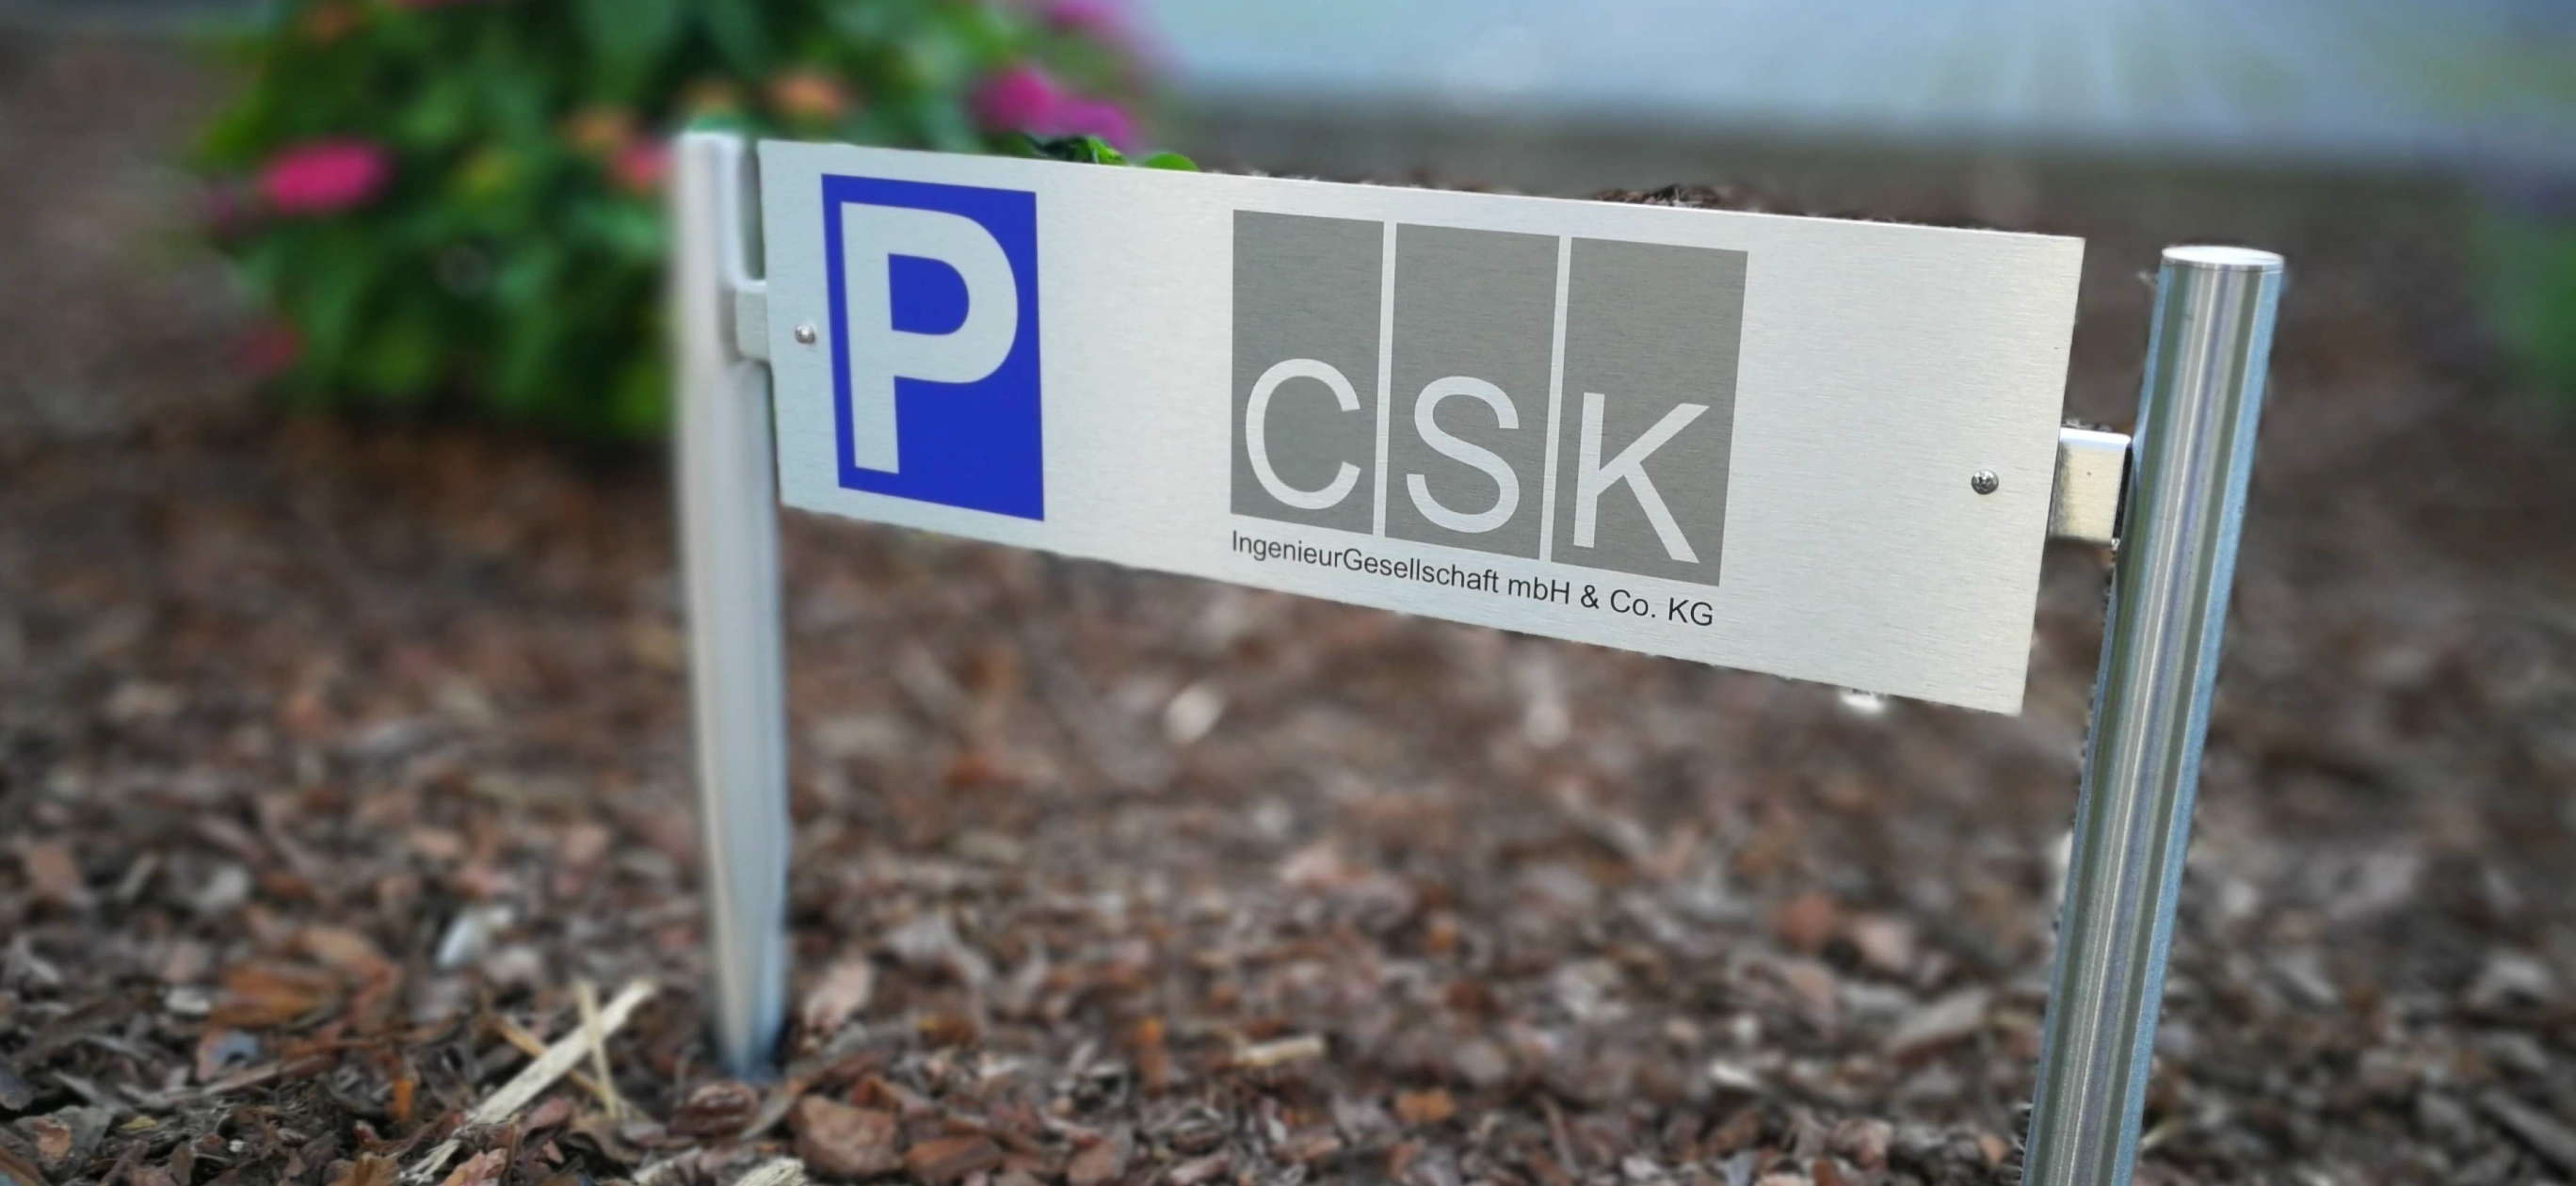 Parkplatzschilder günstig online kaufen